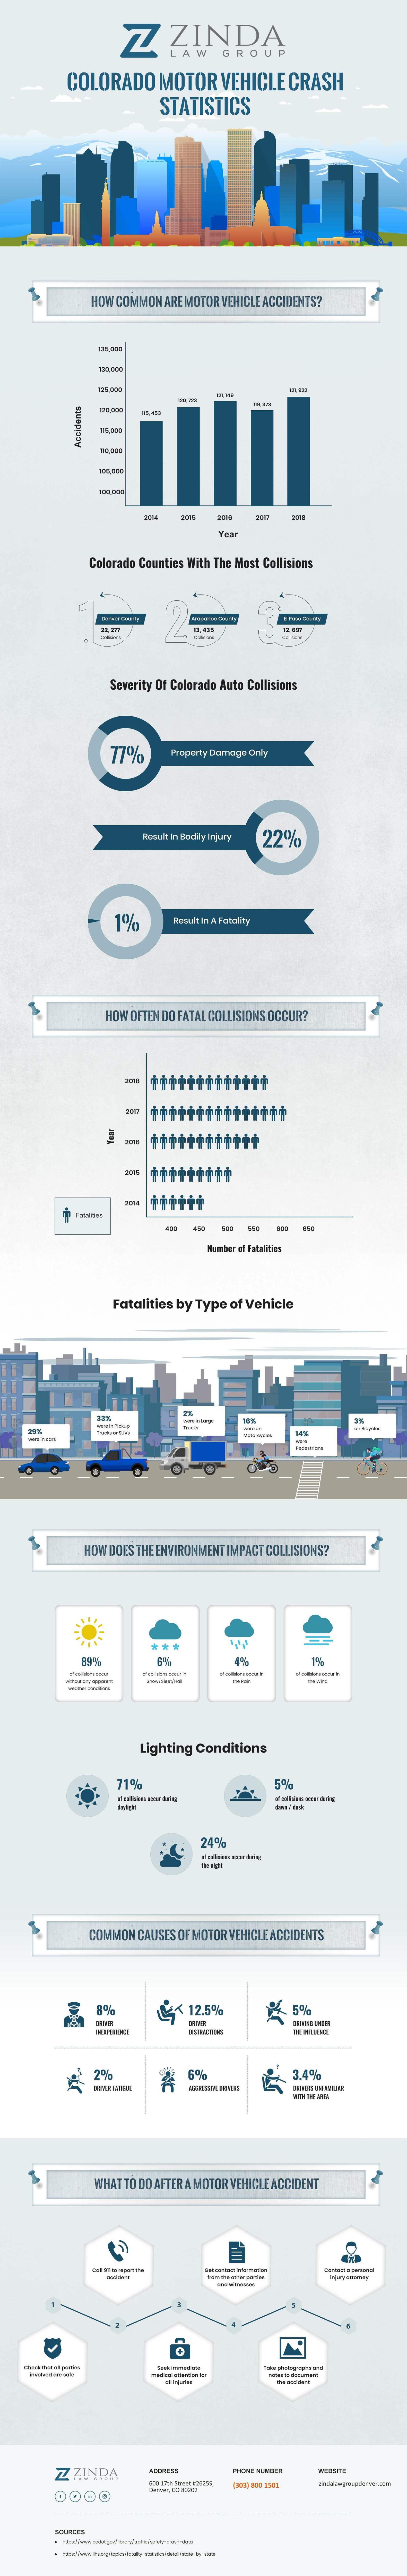 Estadísticas de accidentes de vehículos motorizados de Colorado